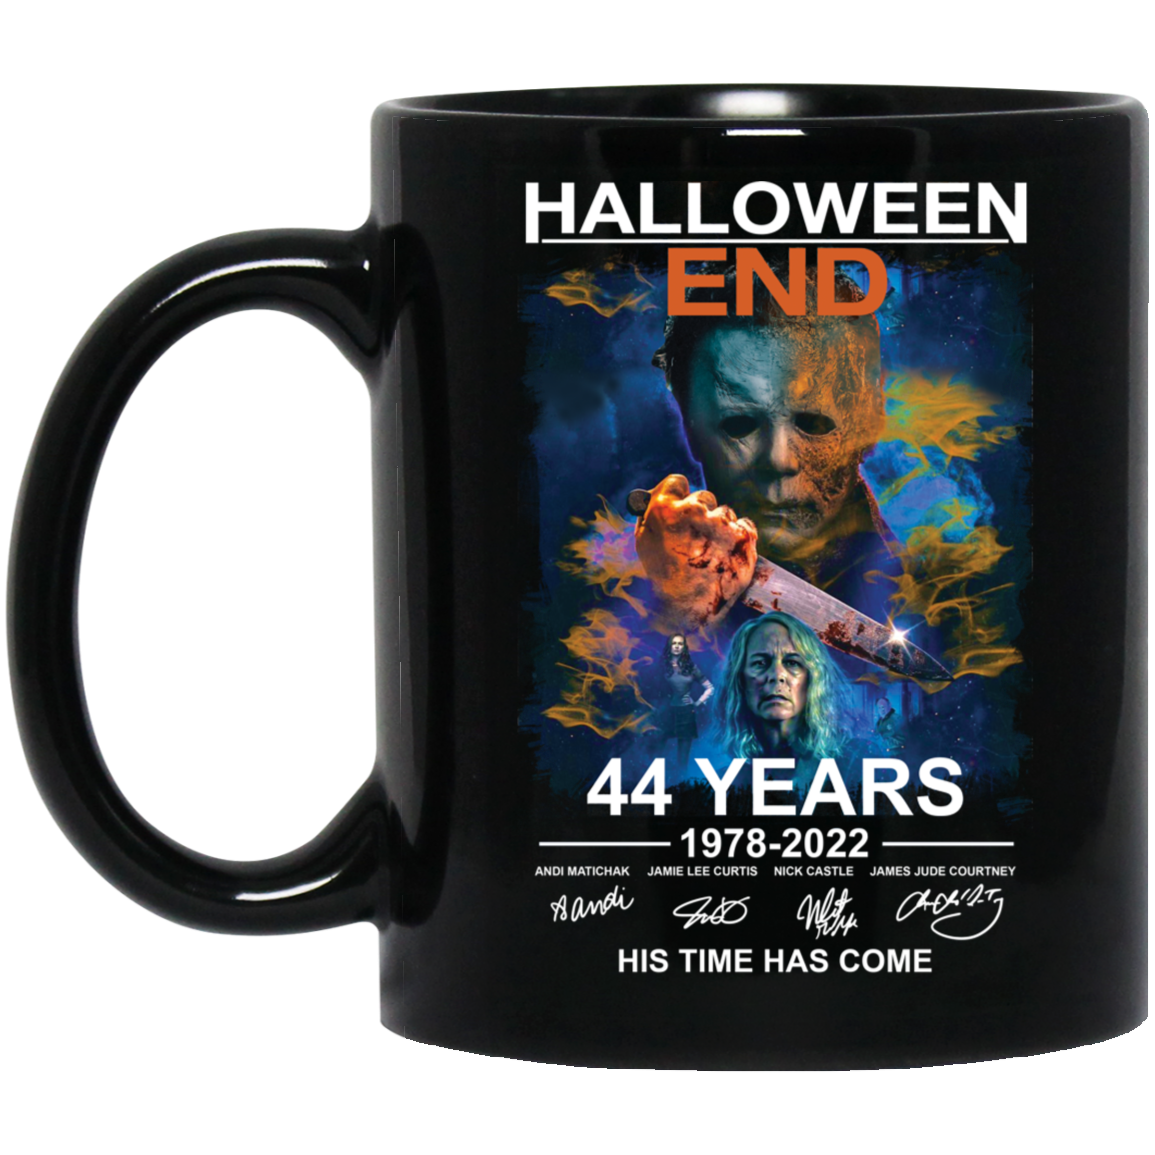 Halloween End 44 Years 1978 2022 His Time Has Come mug